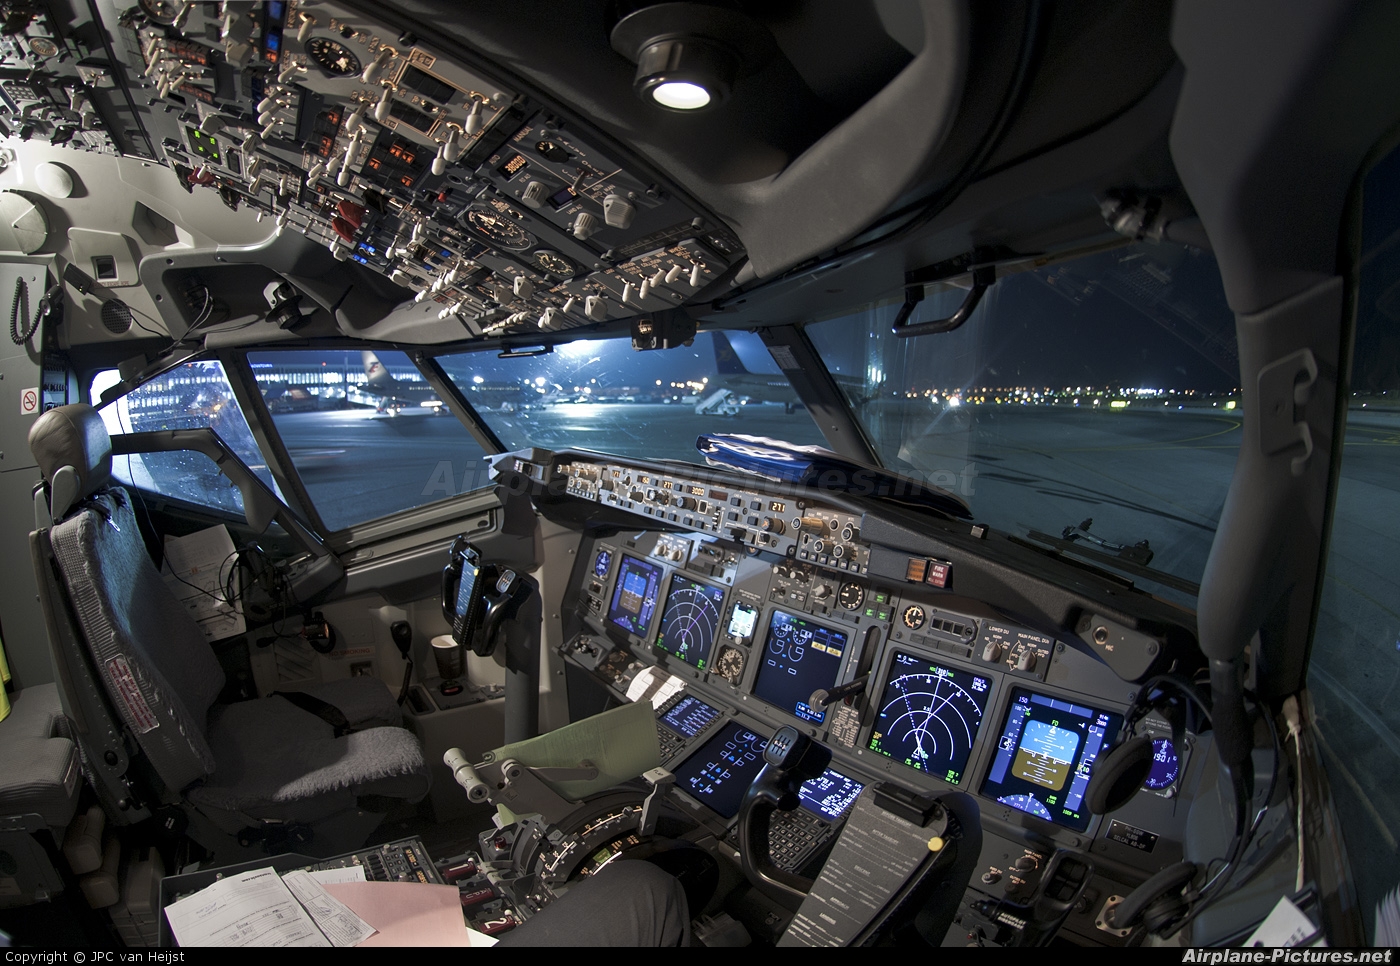 737 800 Cockpit Wallpaper - WallpaperSafari